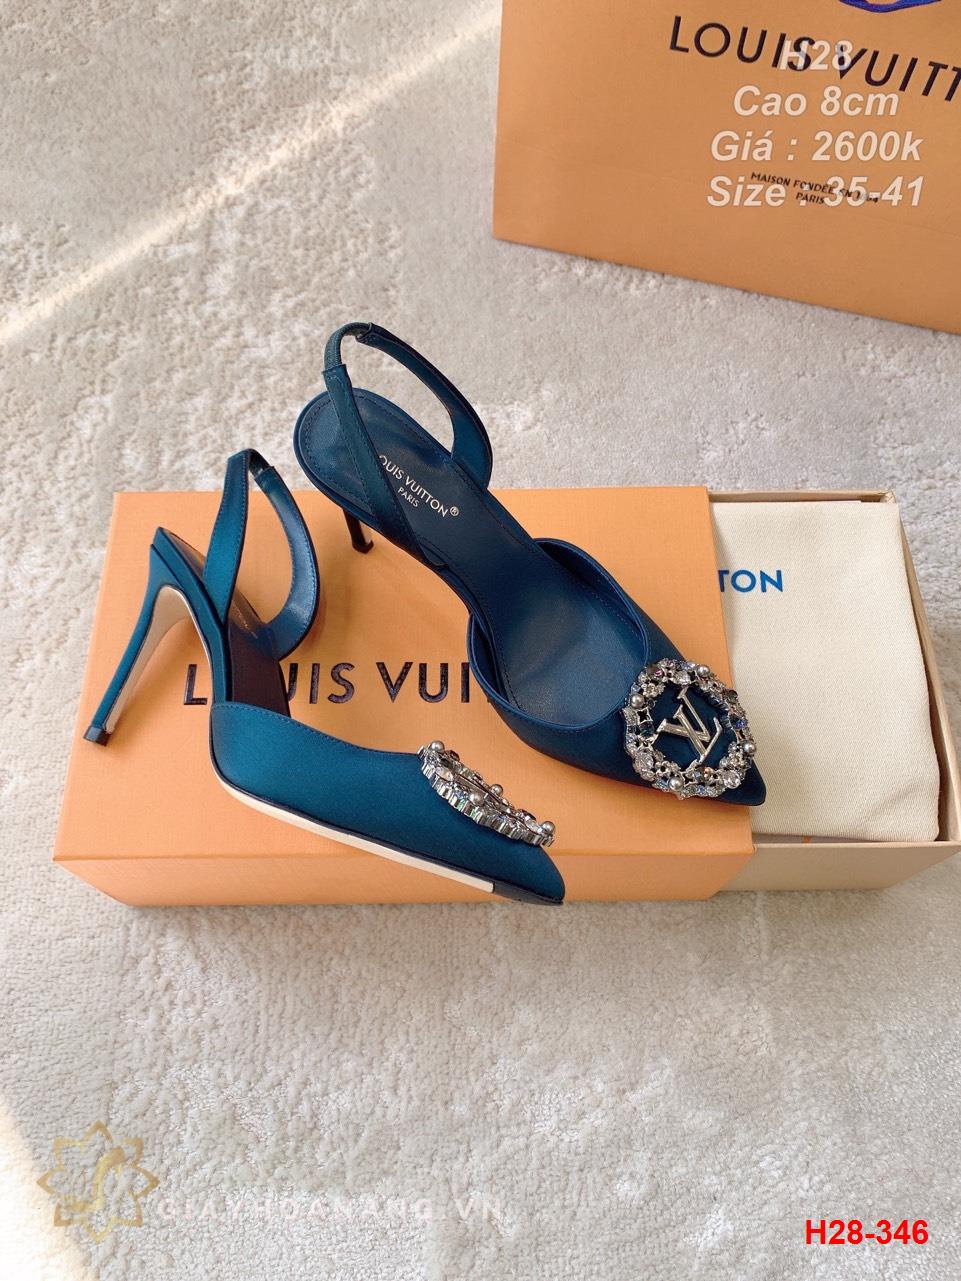 H28-346 Louis Vuitton sandal cao 8cm siêu cấp